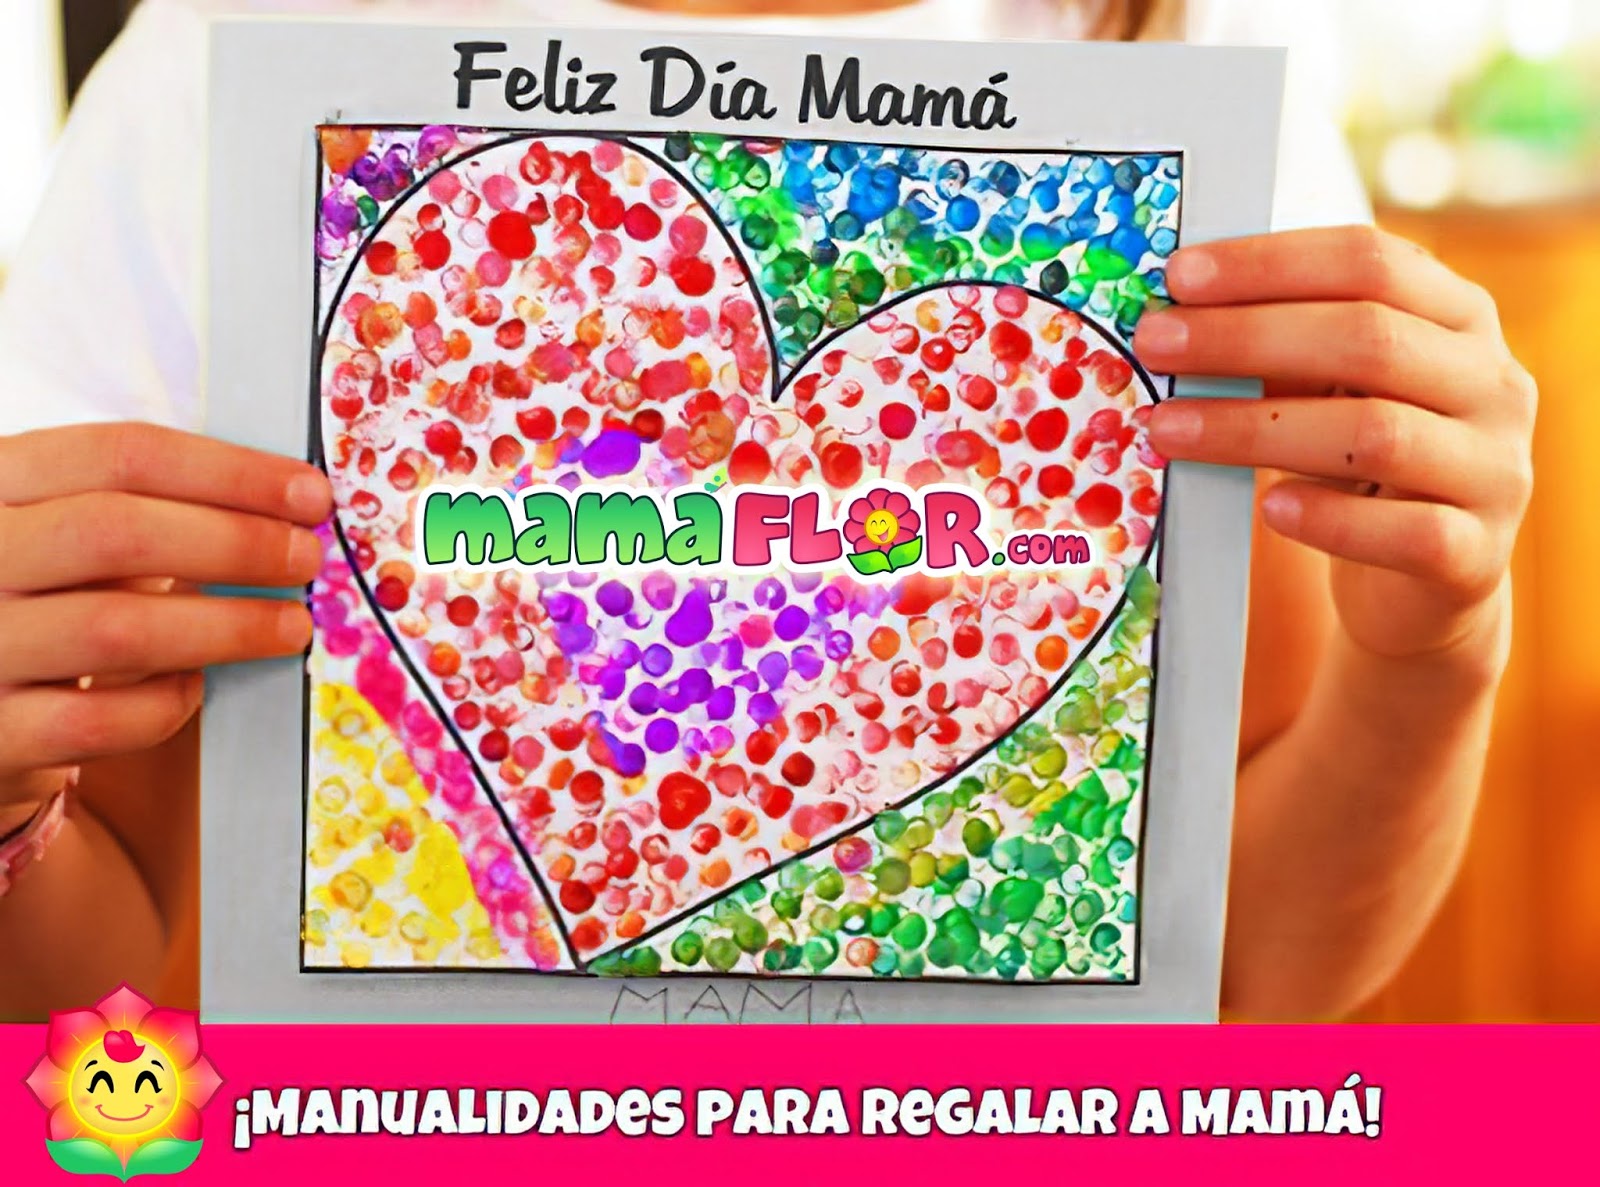 Muy enojado formar Excavación 100 Manualidades para el Día de la Madre, lindas y fáciles de Hacer -  Manualidades MamaFlor